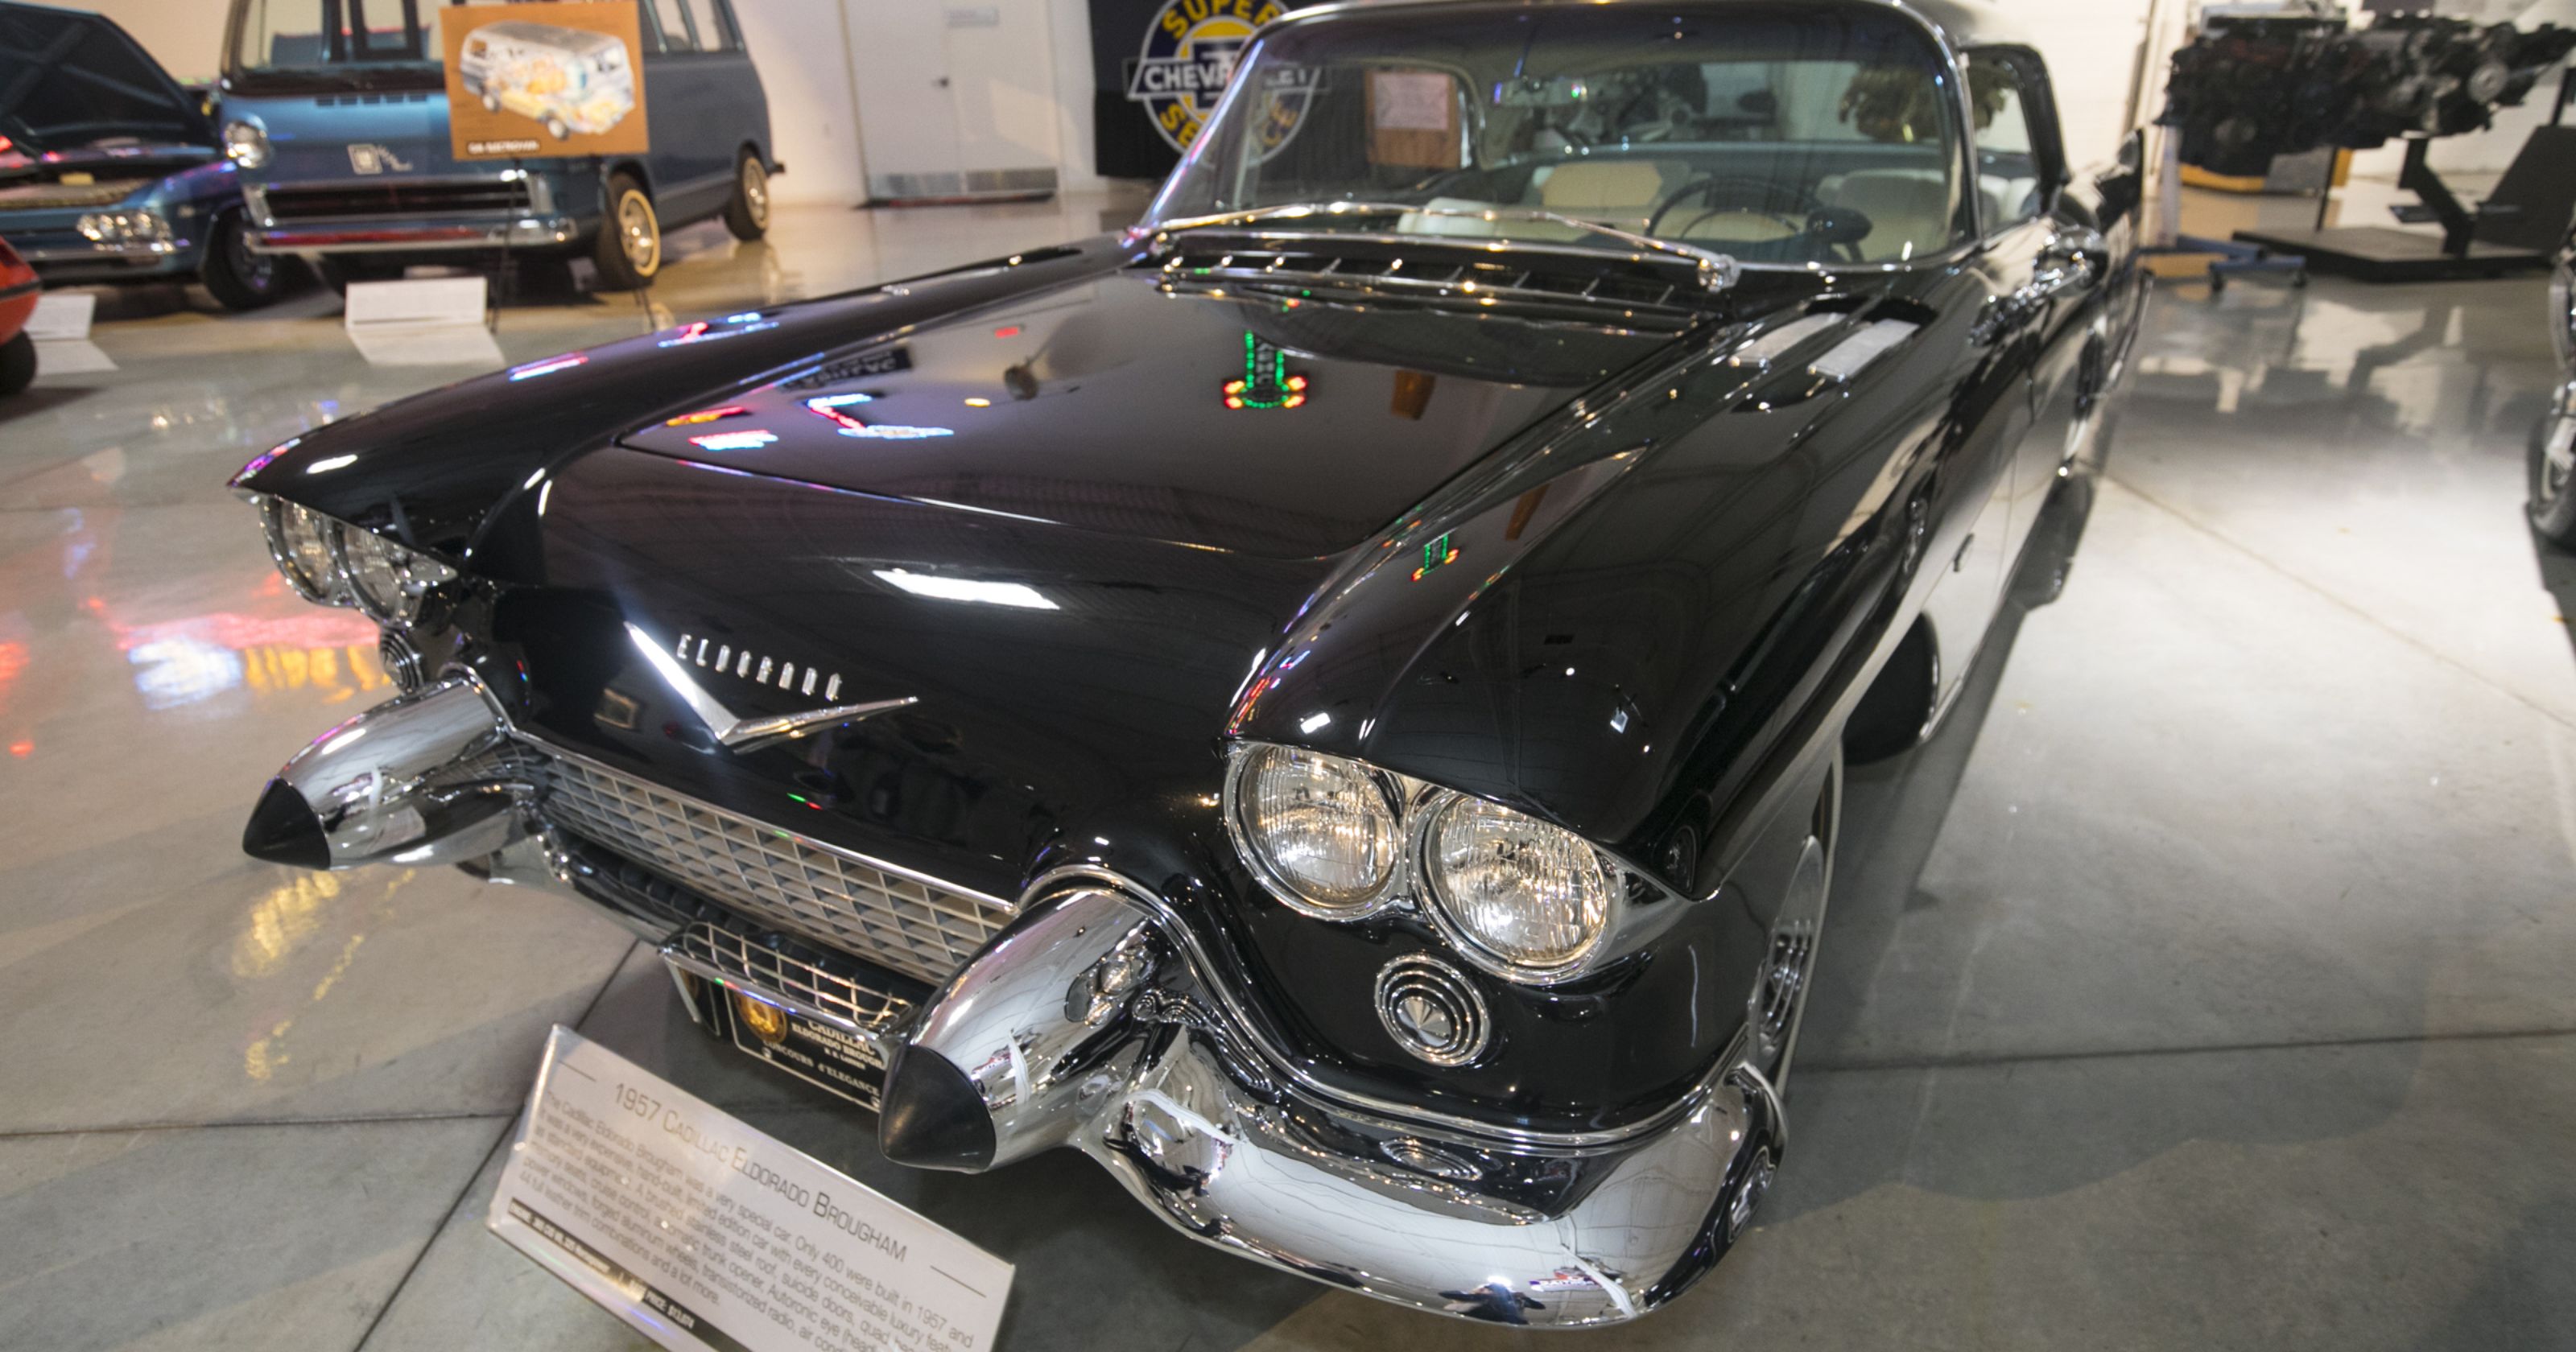 Detroit's best-kept auto secret? GM's private museum for vintage cars